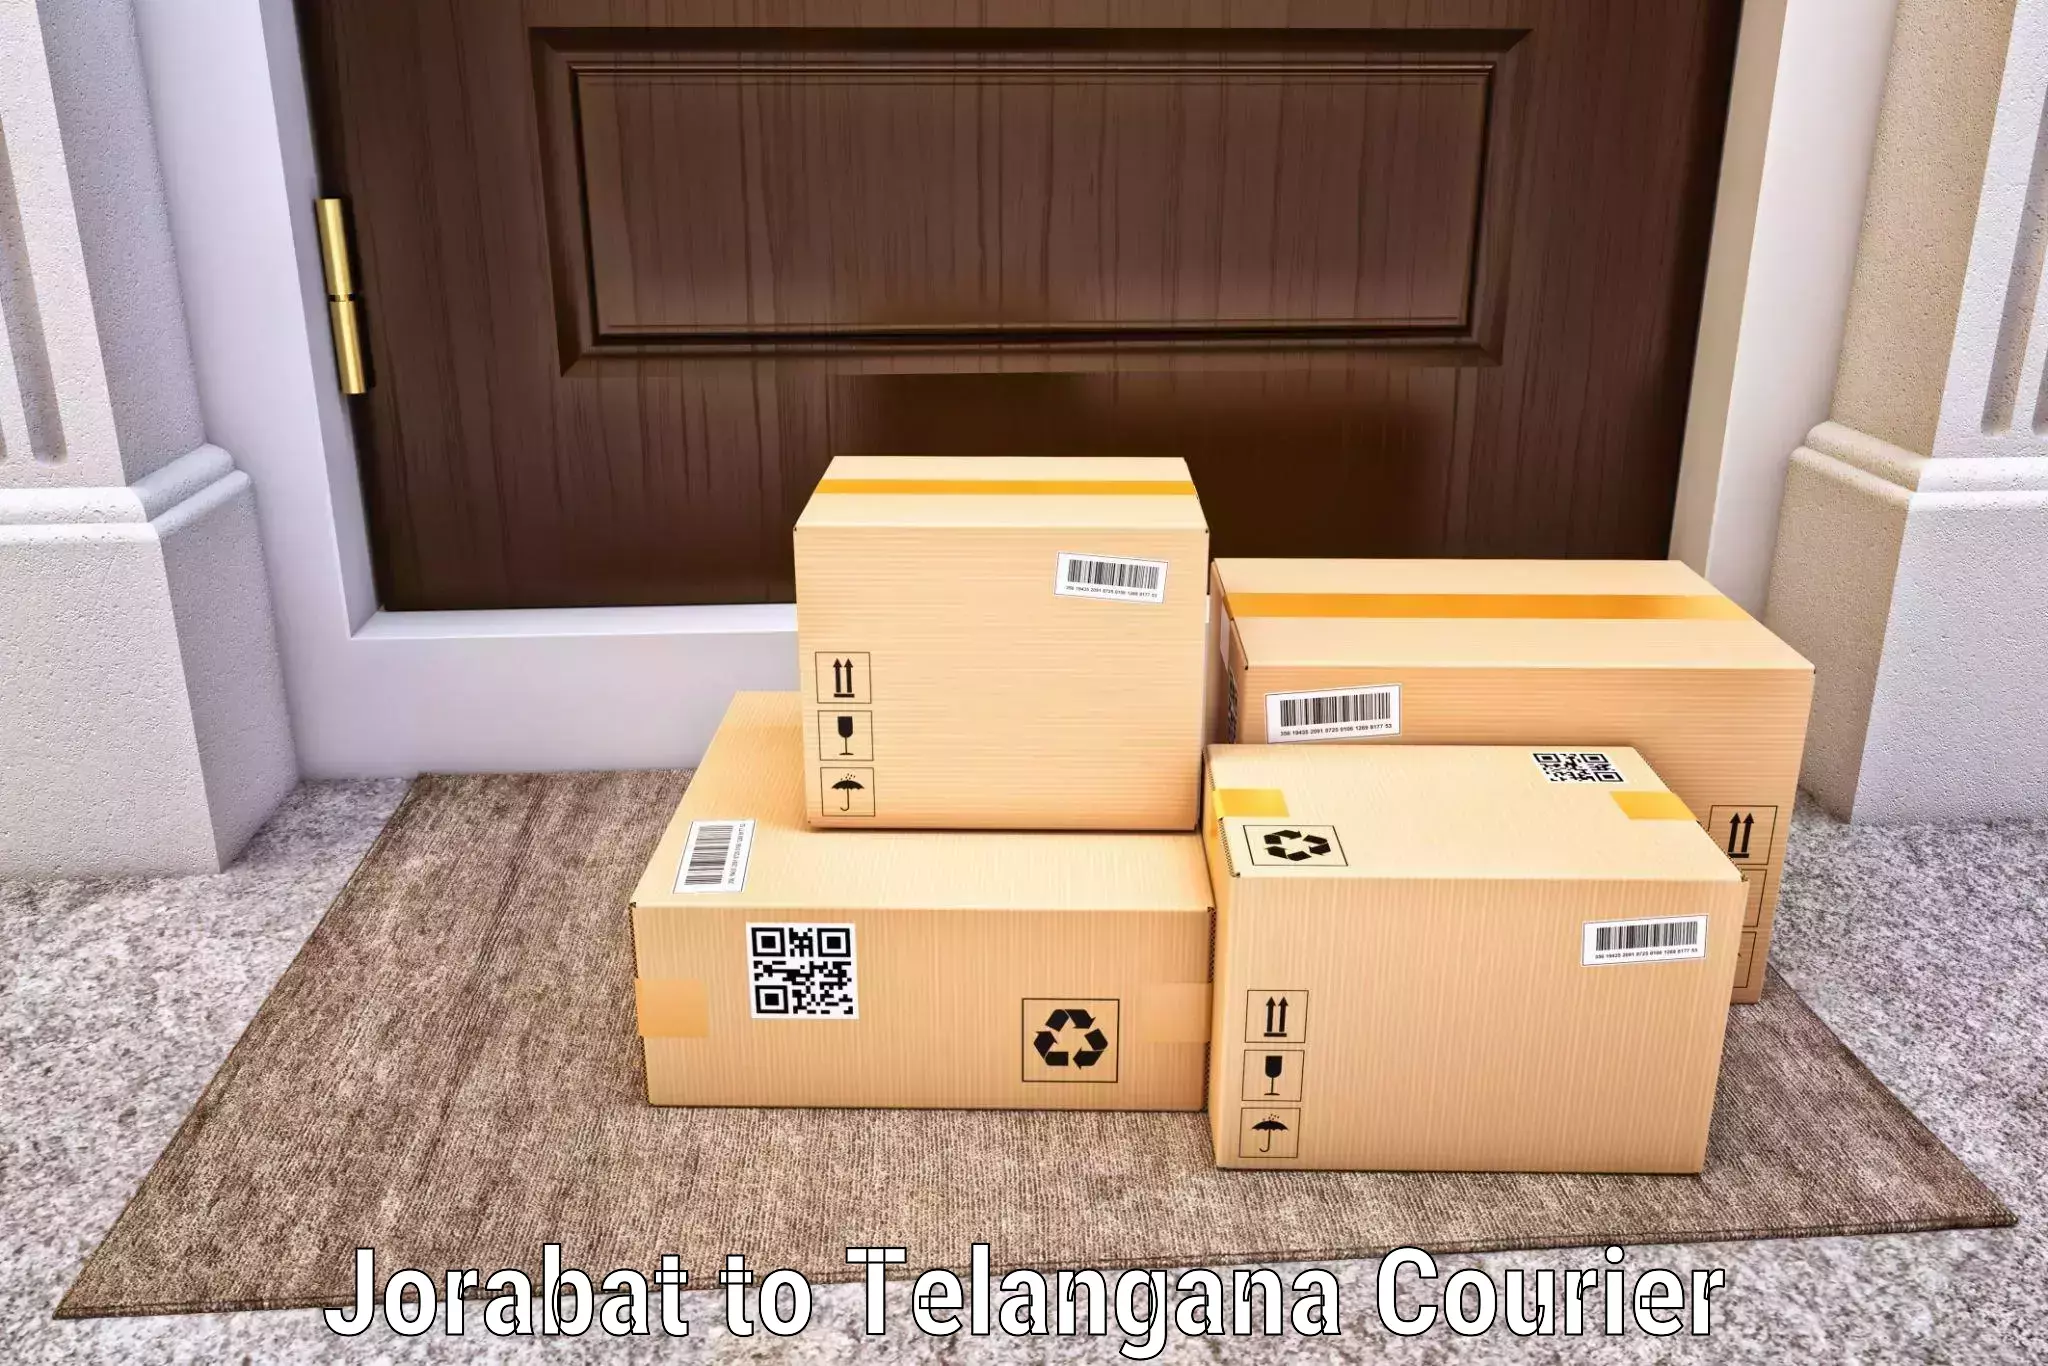 Customer-friendly courier services Jorabat to Dubbak